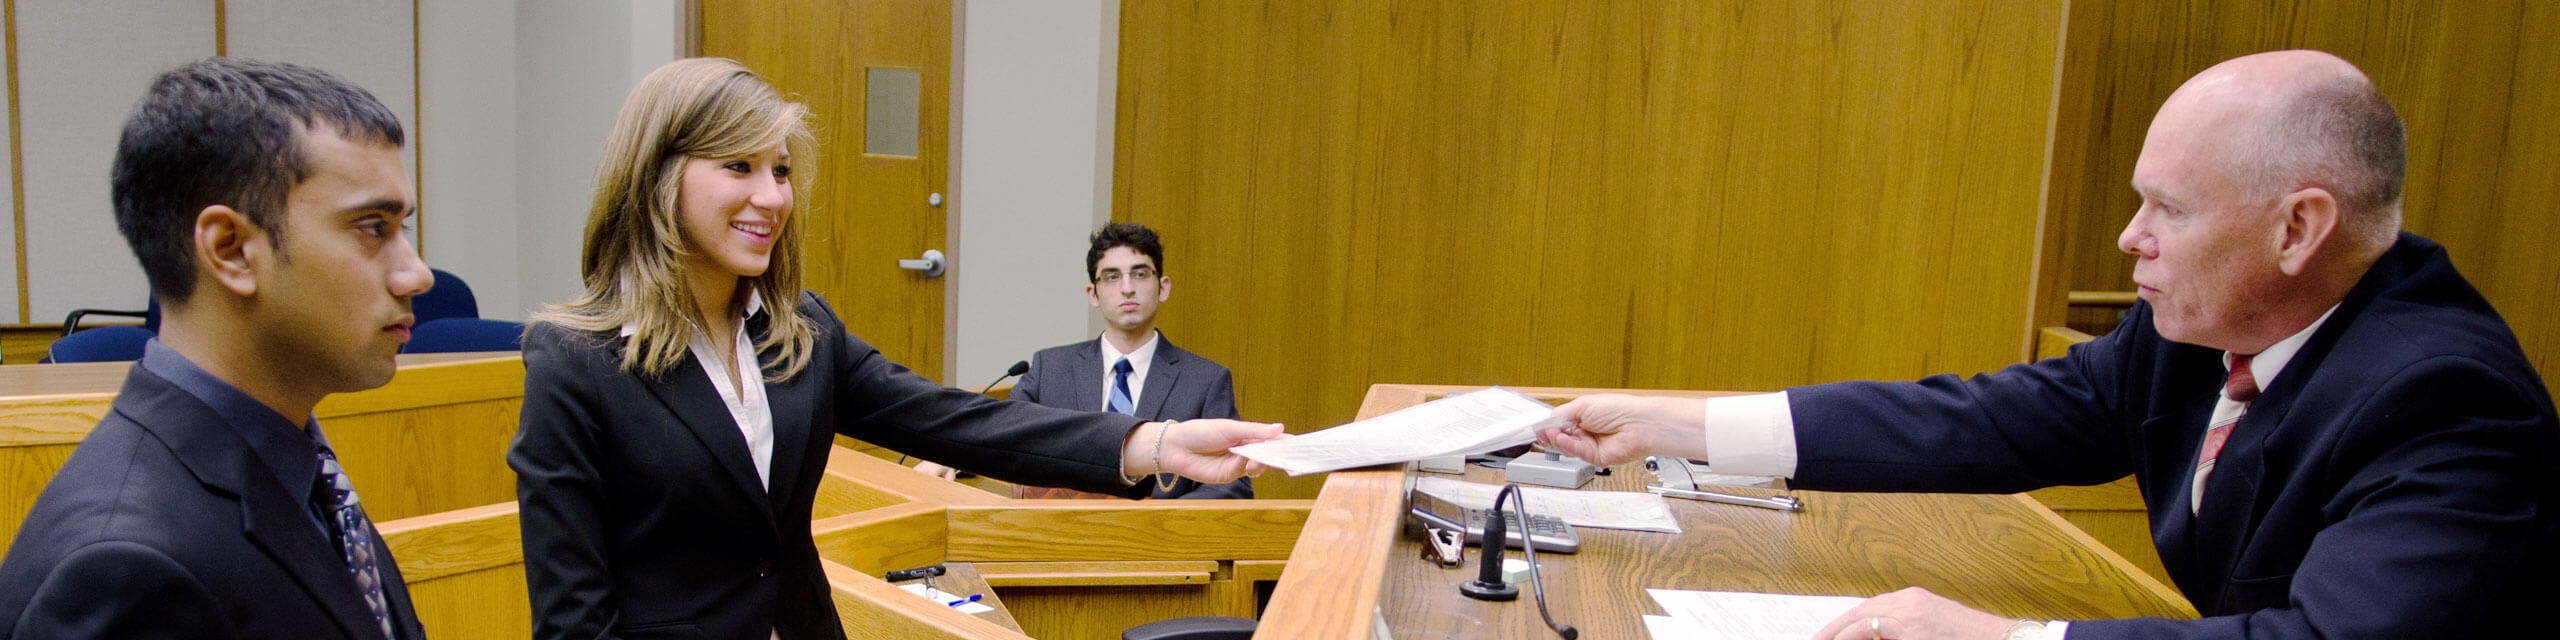 在模拟审判中，两名律师走近审判席。